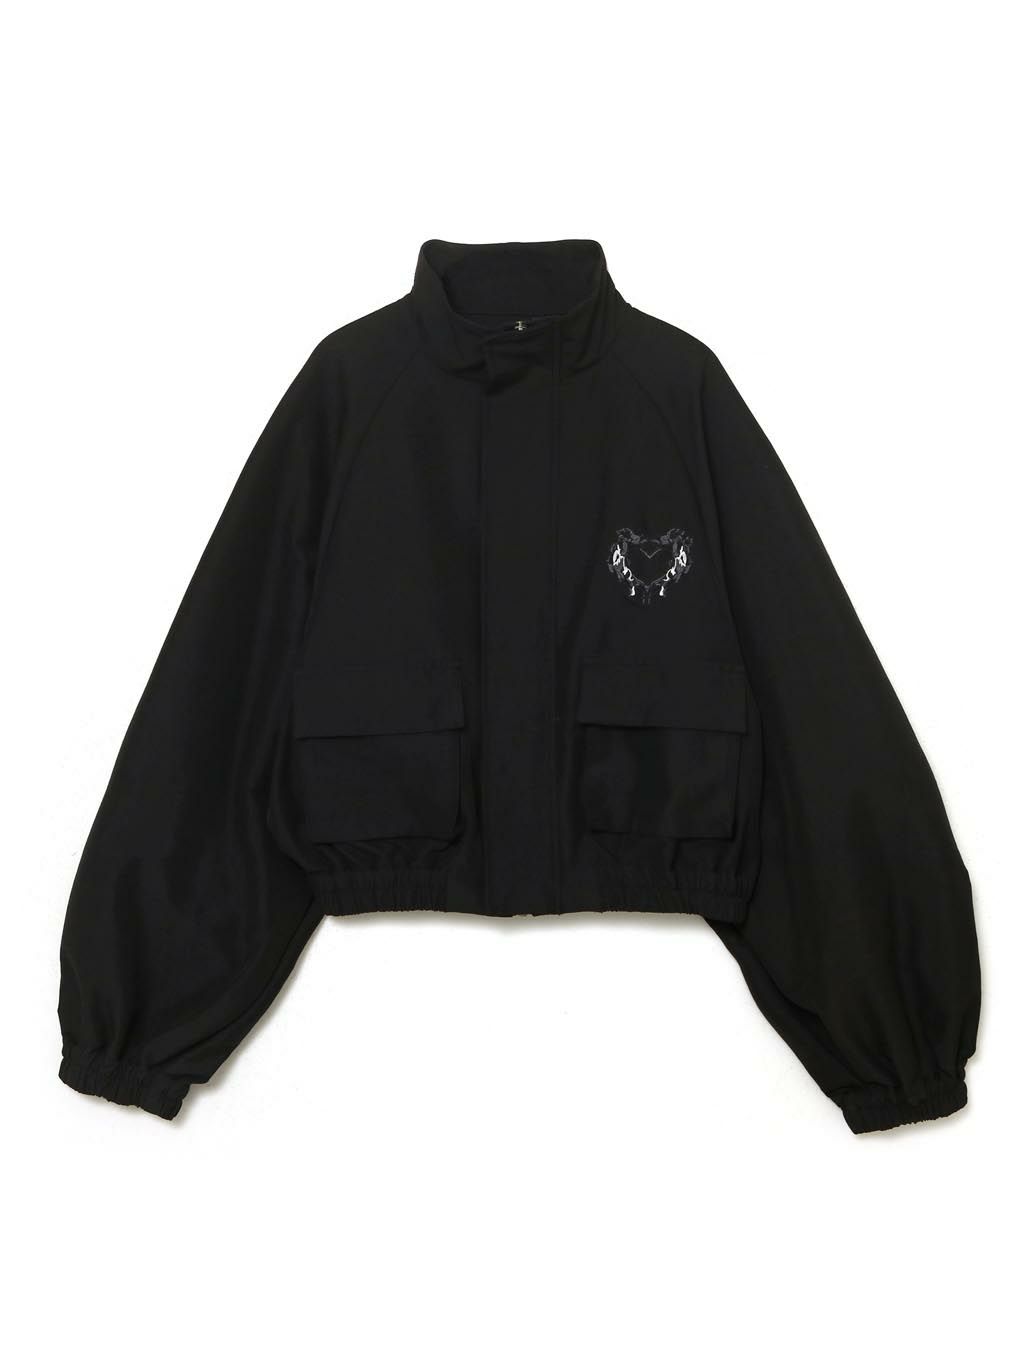 8,199円melt the lady メルトザレディ gothic jacket